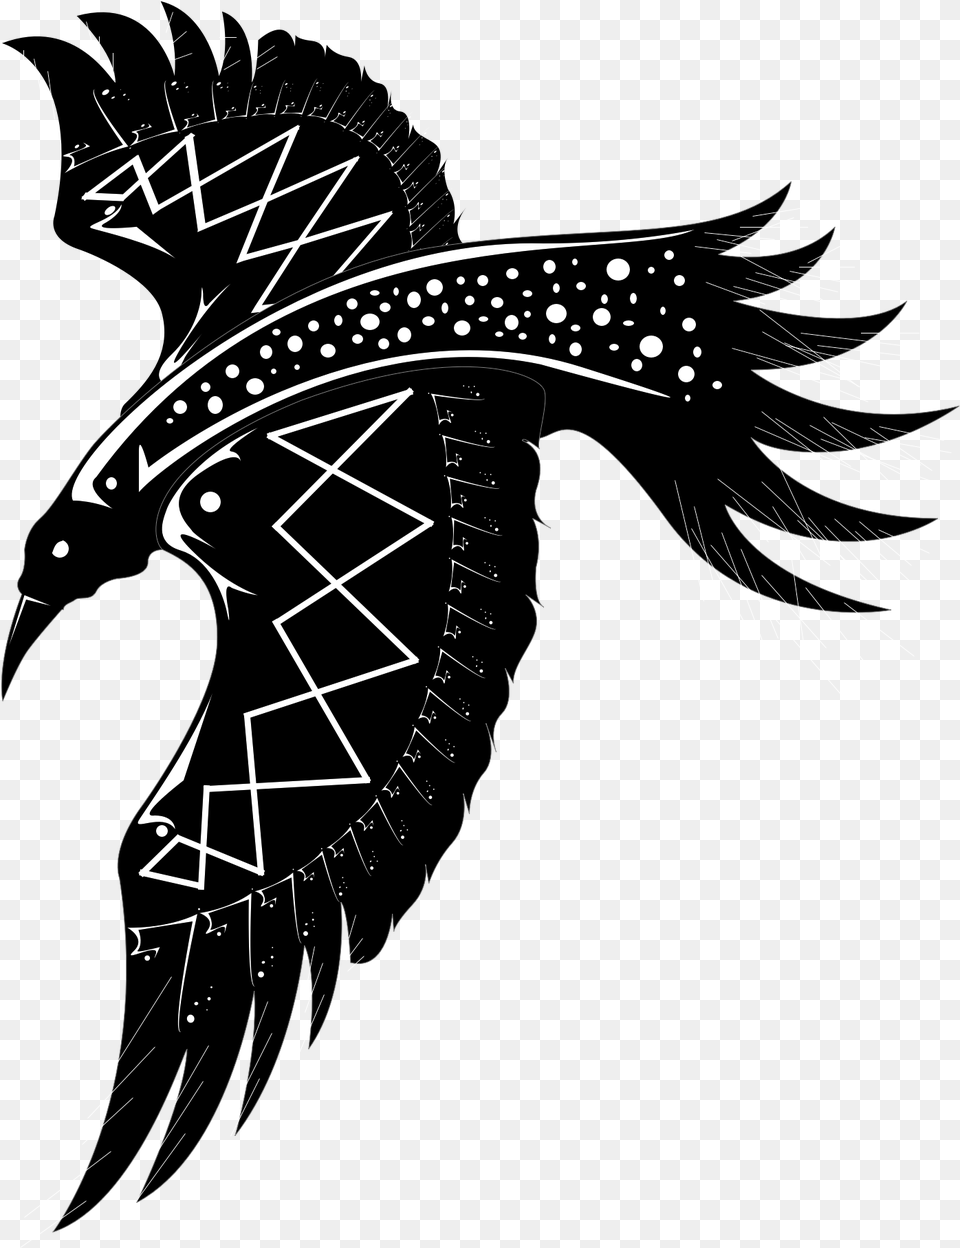 Raven Pesquisa Google Raven Tattoo Art, Drawing, Smoke Pipe, Cross, Symbol Png Image